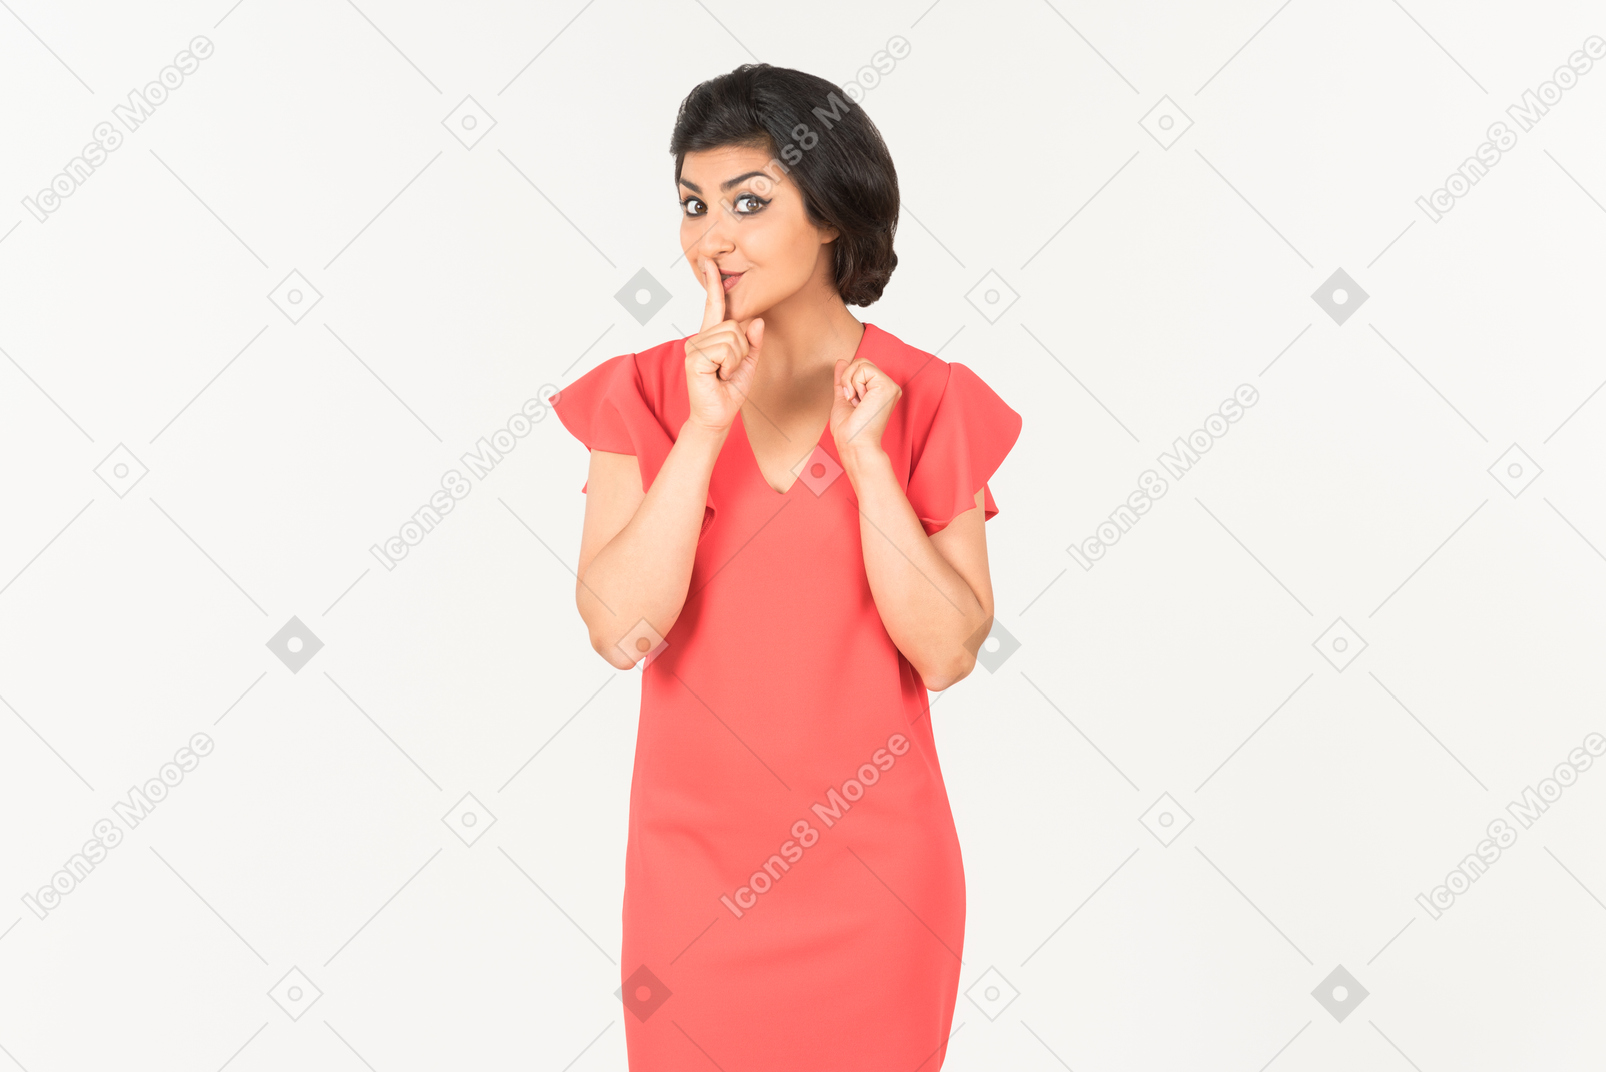 Giovane donna indiana in abito rosso che mostra il segno del silenzio